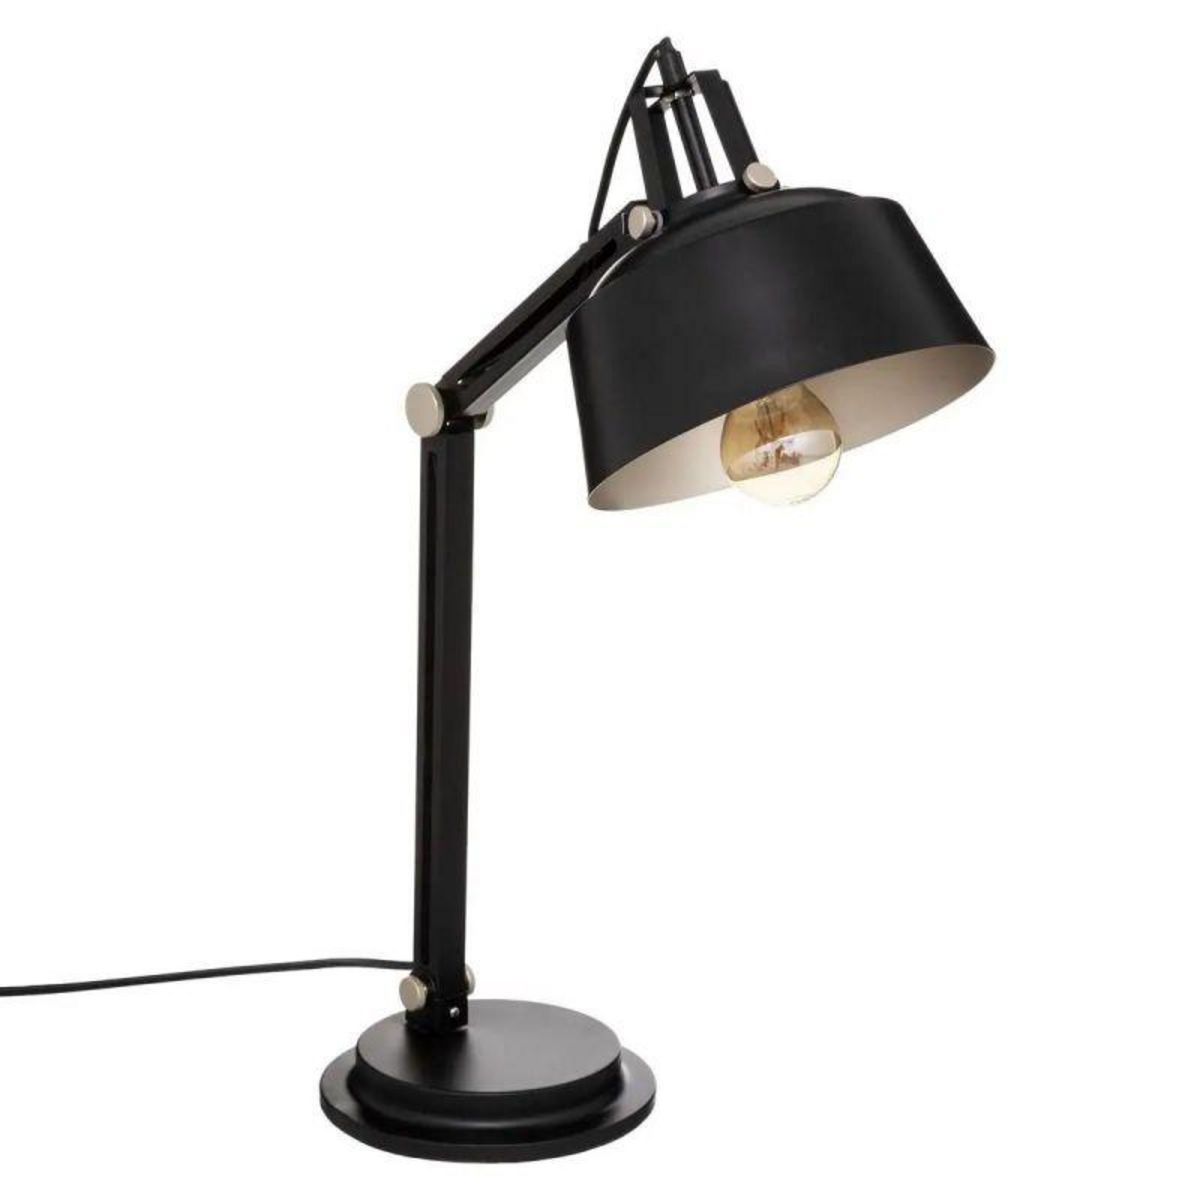  Lampe à Poser Arc Design  Deep Soul  55cm Noir